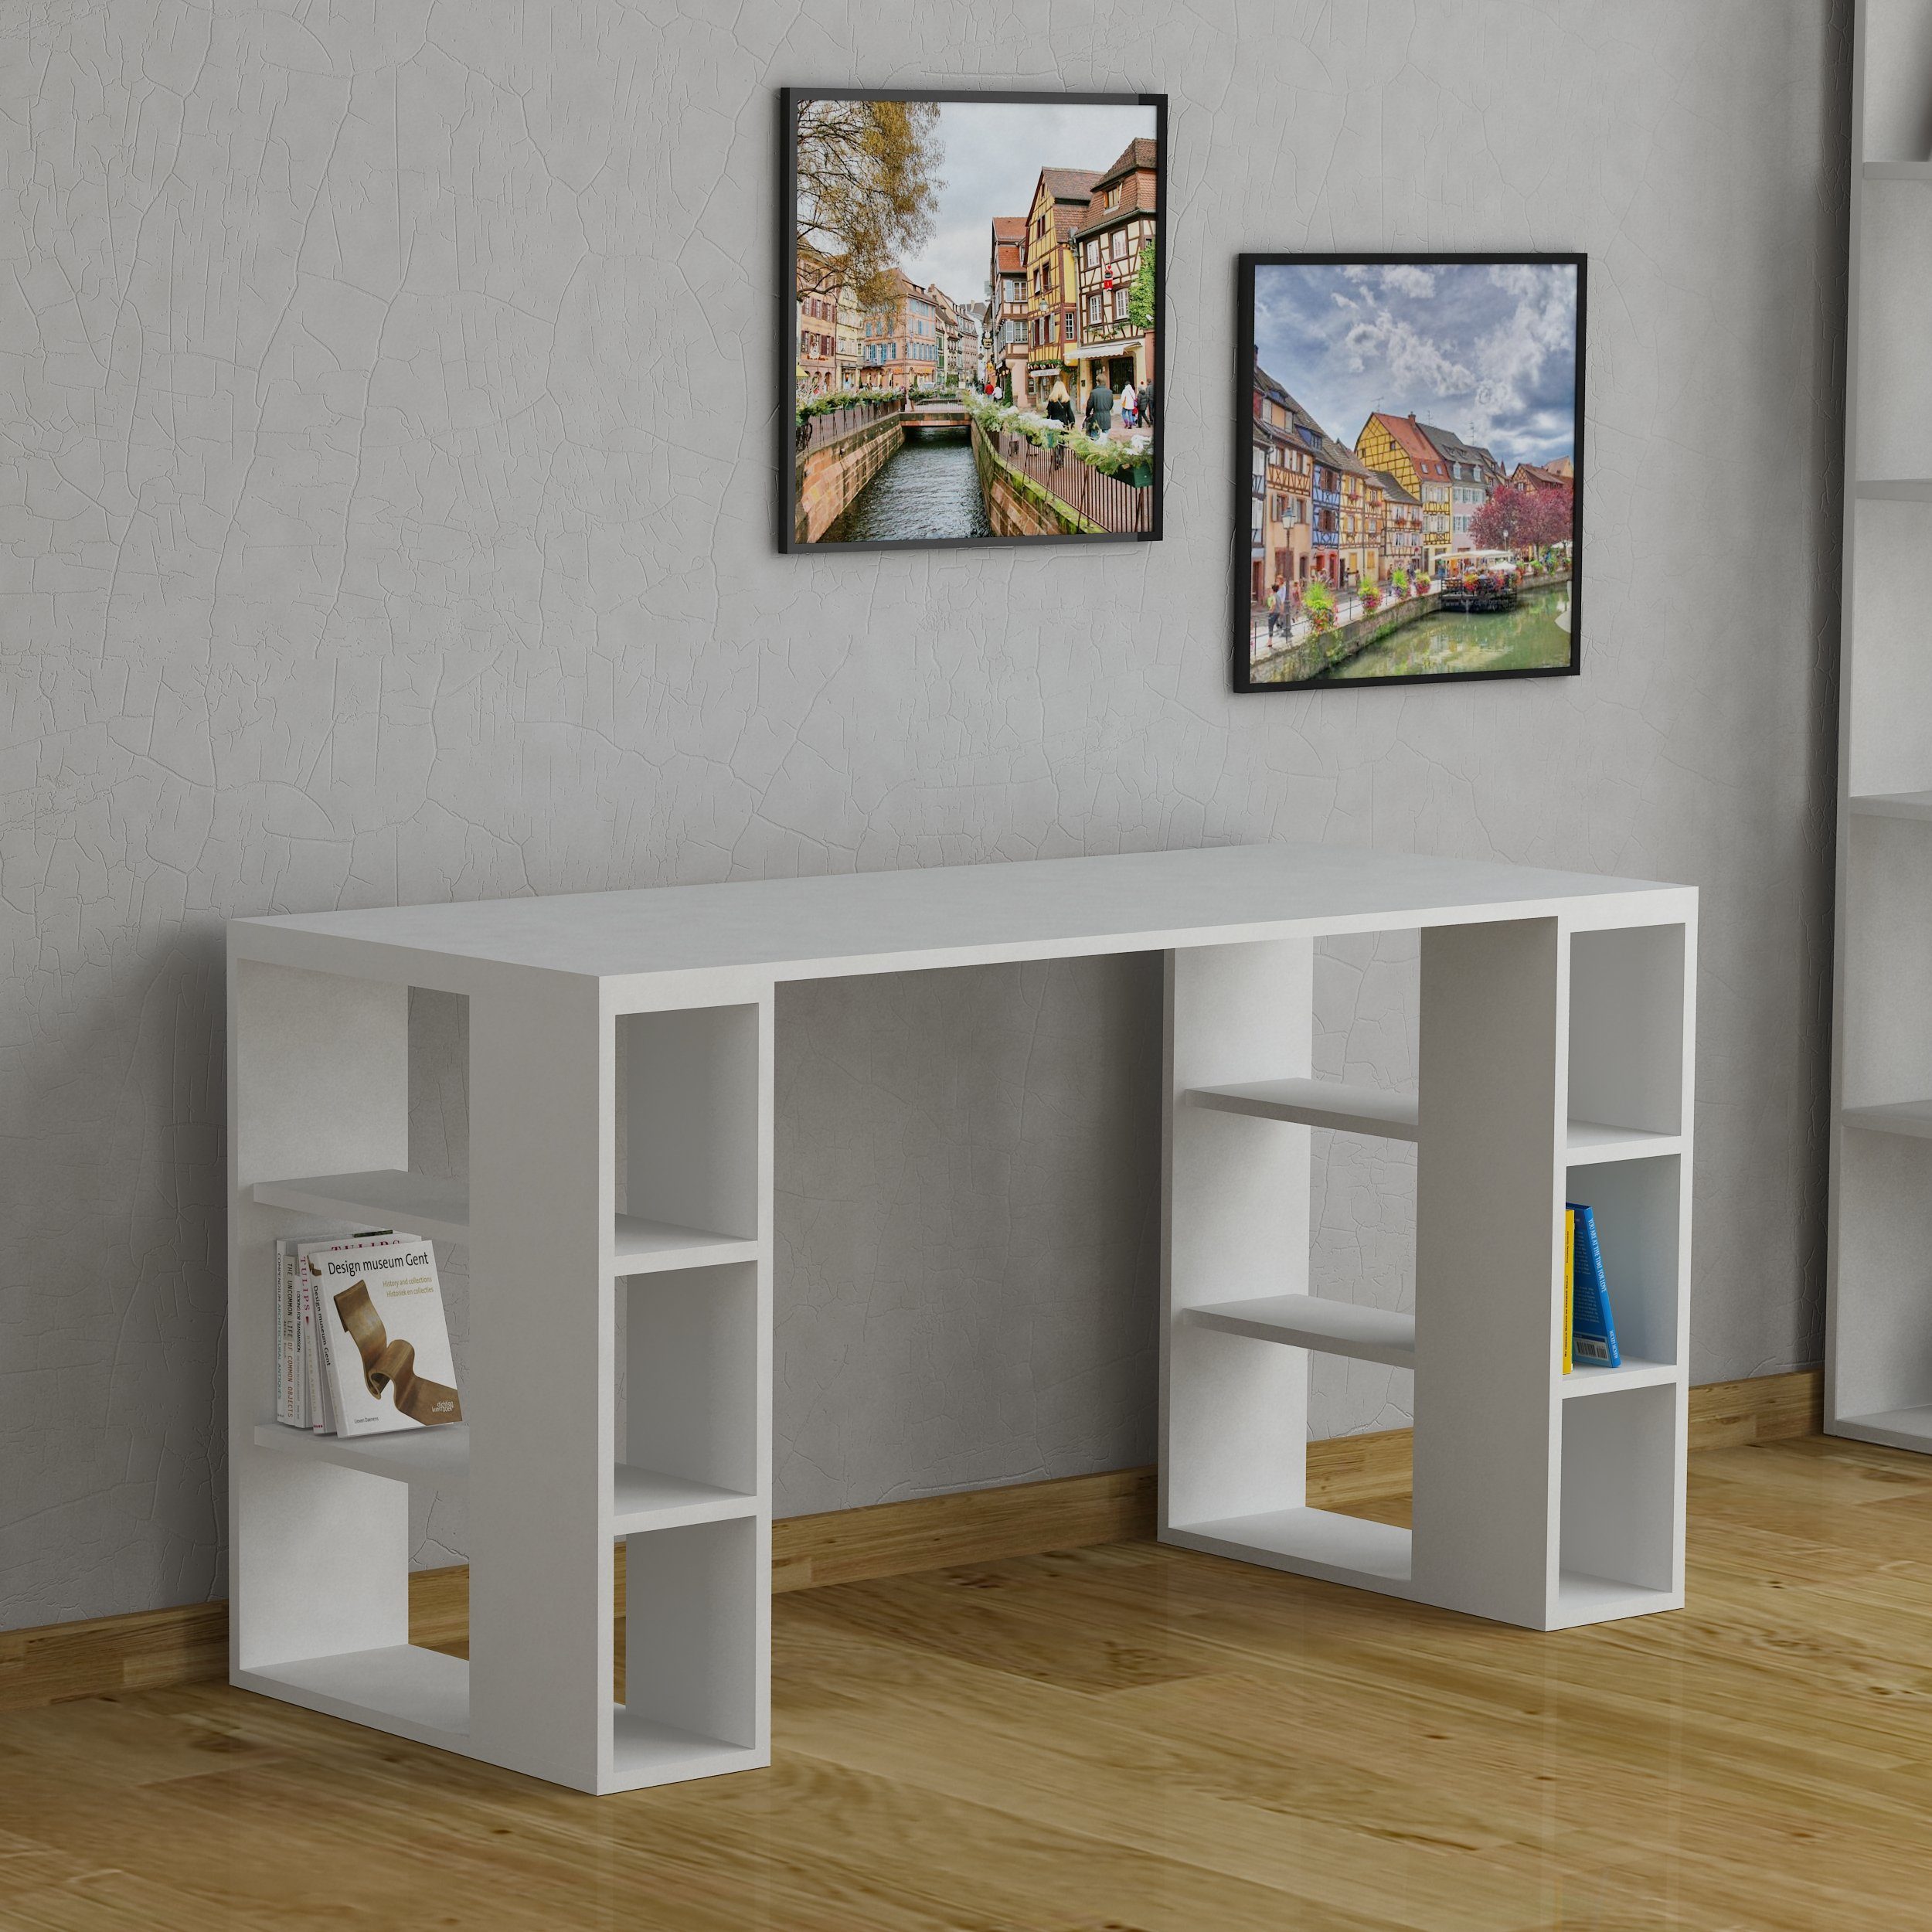 Decortie Schreibtisch Colmar (1 Tisch), Moderner Schreibtisch Mit Bücherregal, 140 x 60 x 75 cm weiß